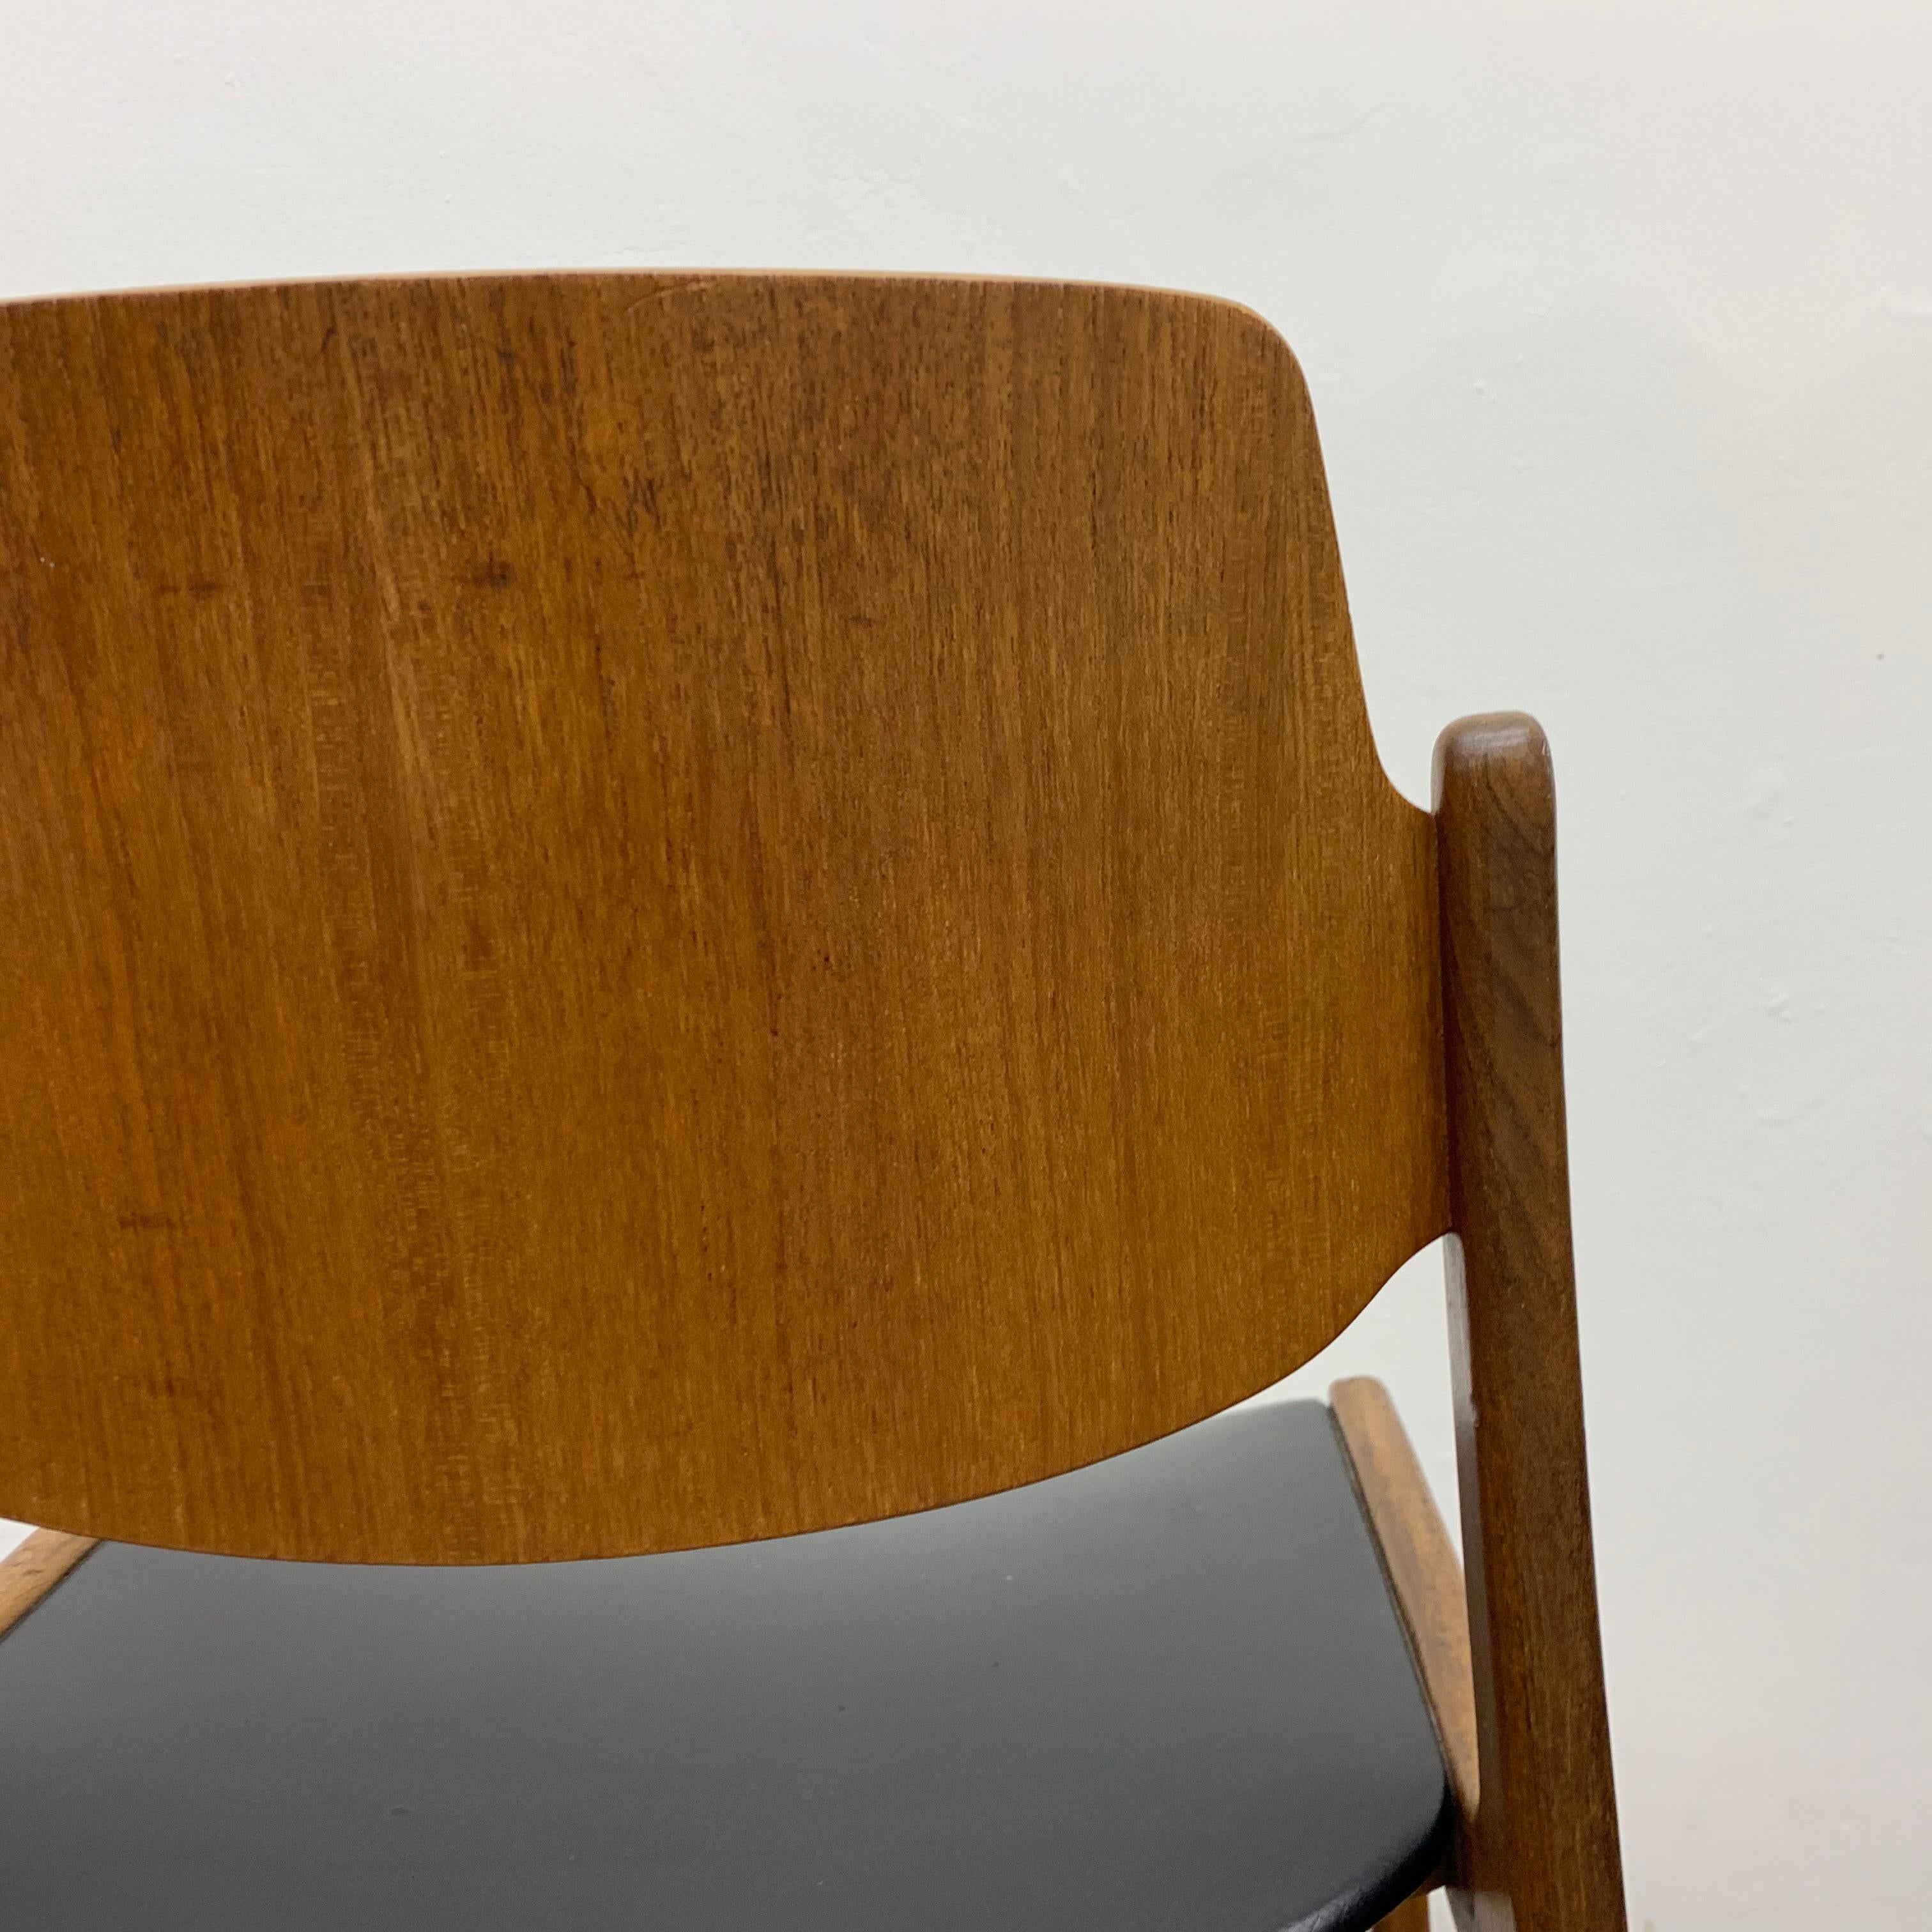 Hartmut Lohmeyer for Wilkhahn 1950’s dining chair teak wood design For Sale 1